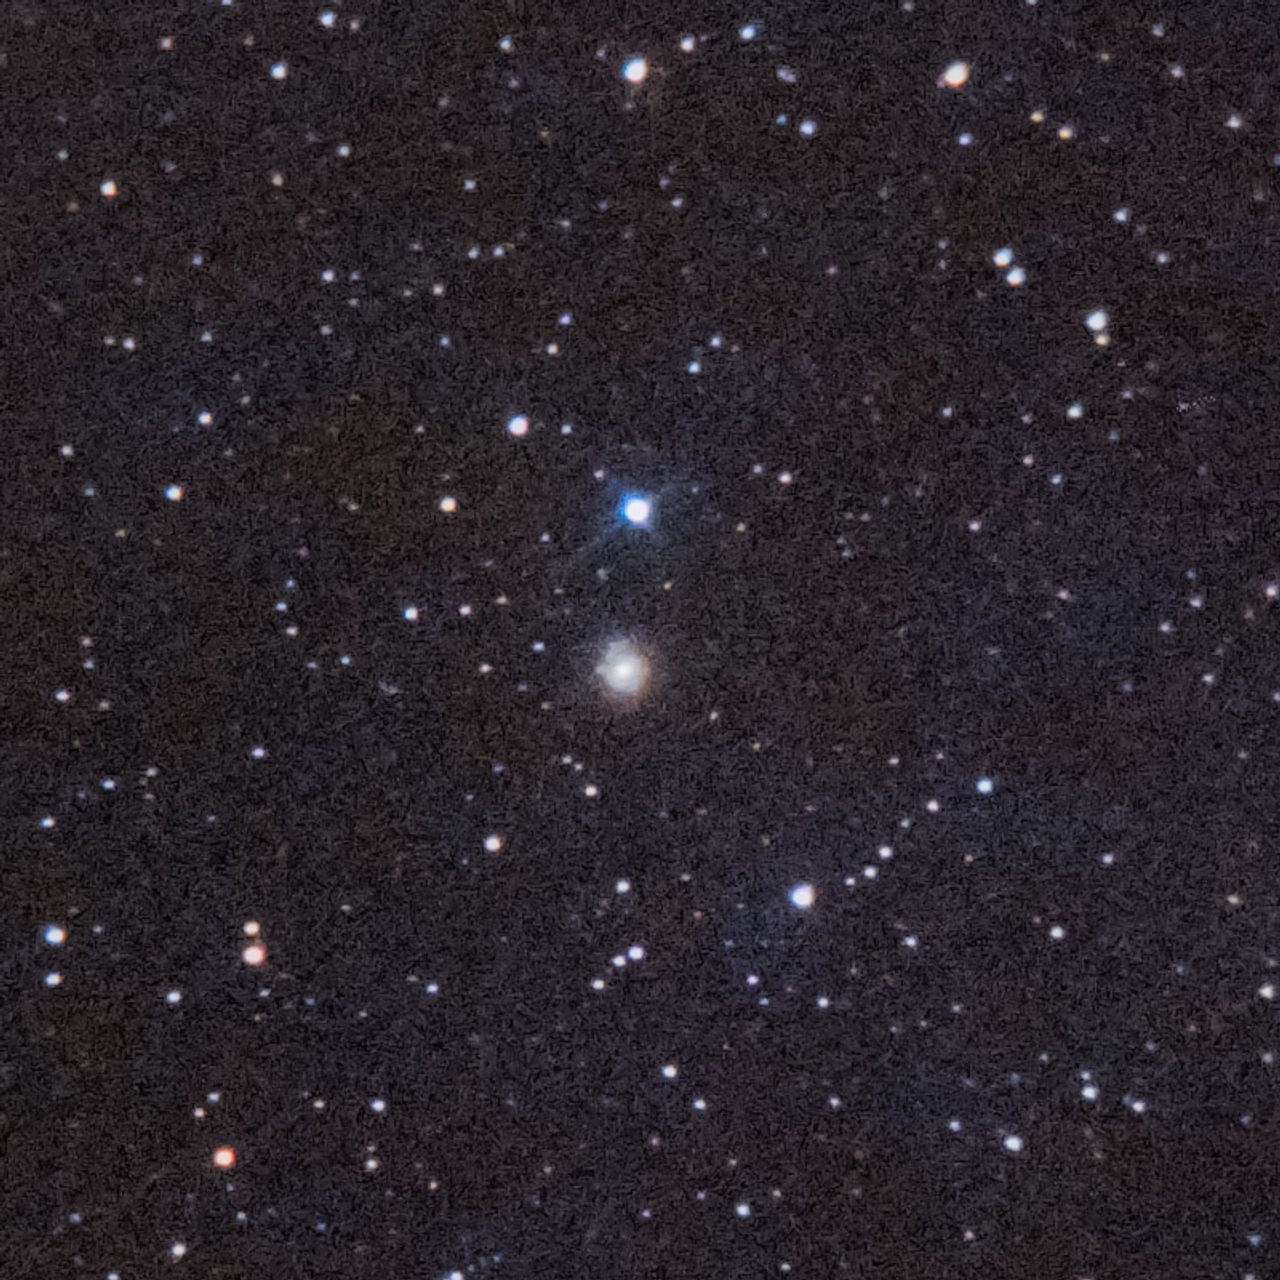 NGC278